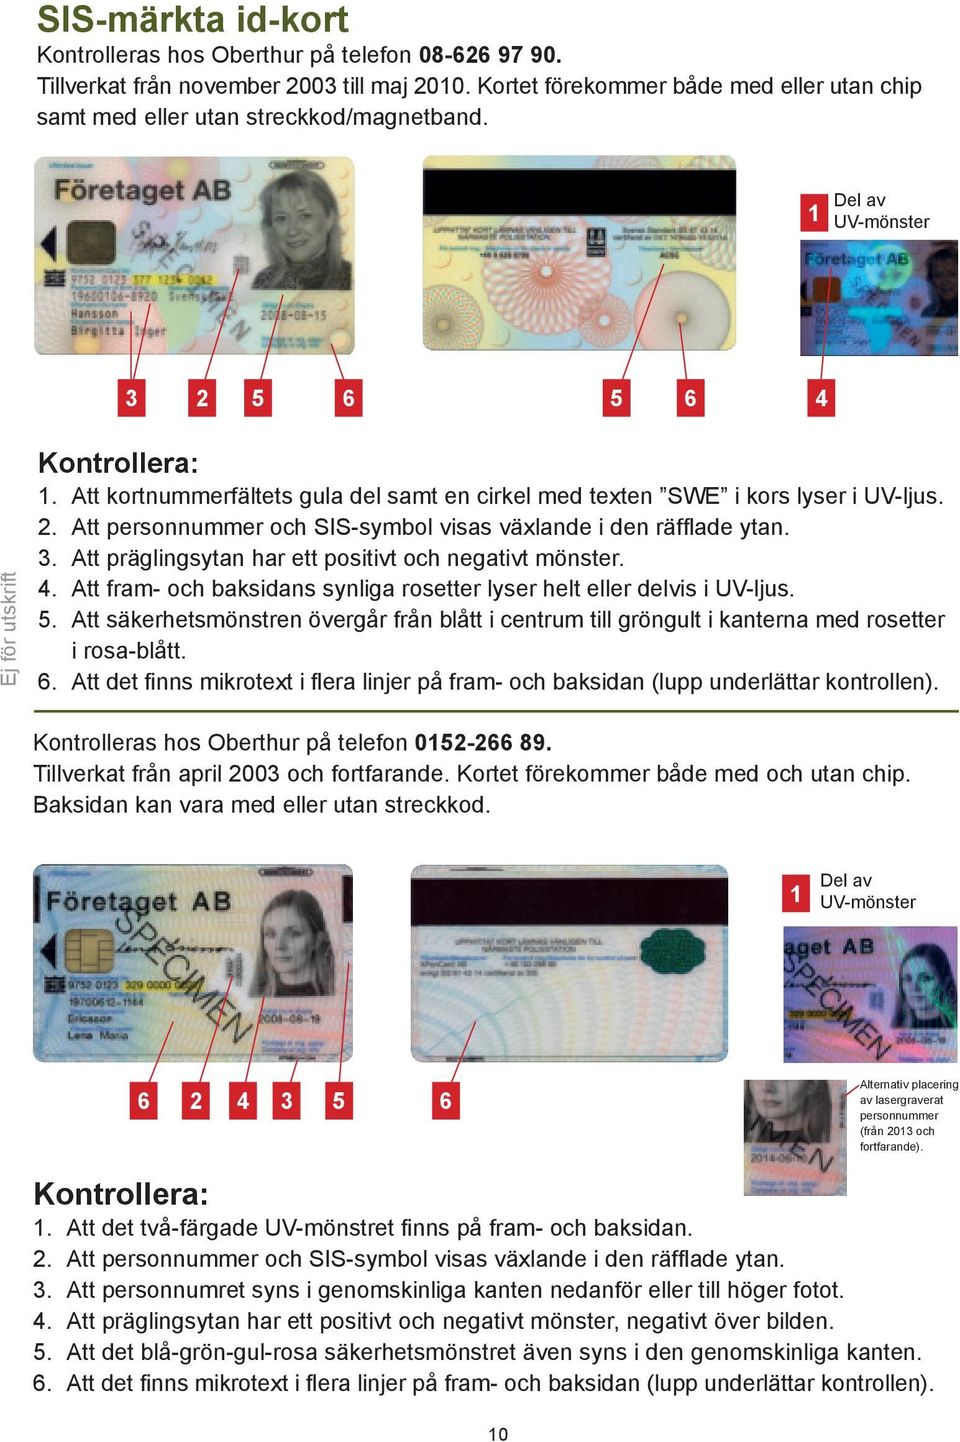 Kontroll av identitet, svenska id-handlingar godkända av bankerna 